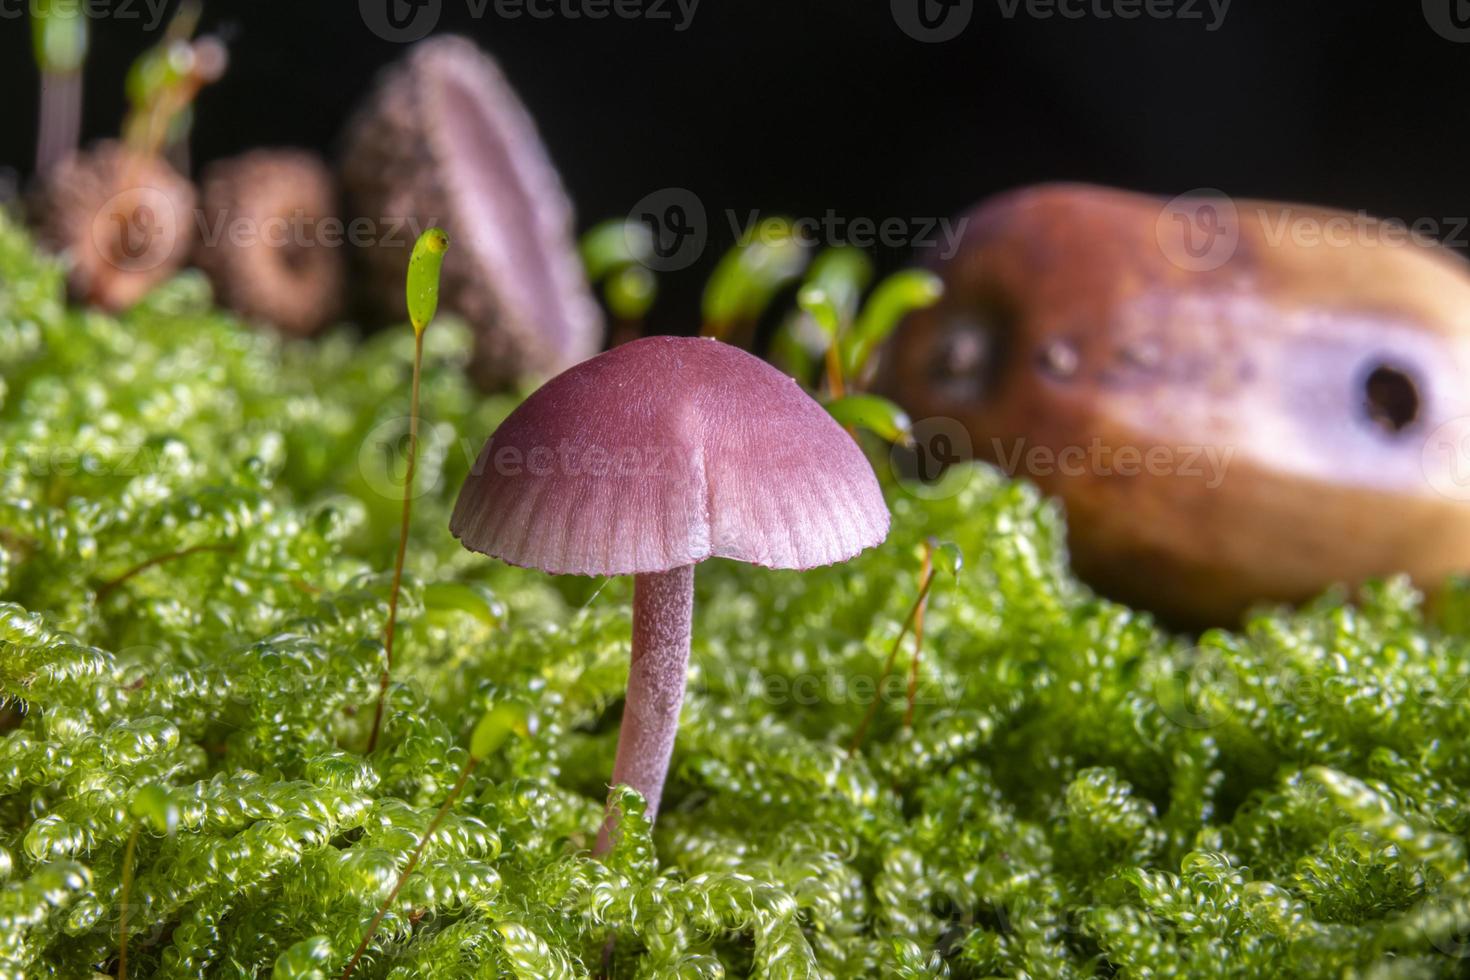 pequeno funil de laca roxa no musgo no chão da floresta foto